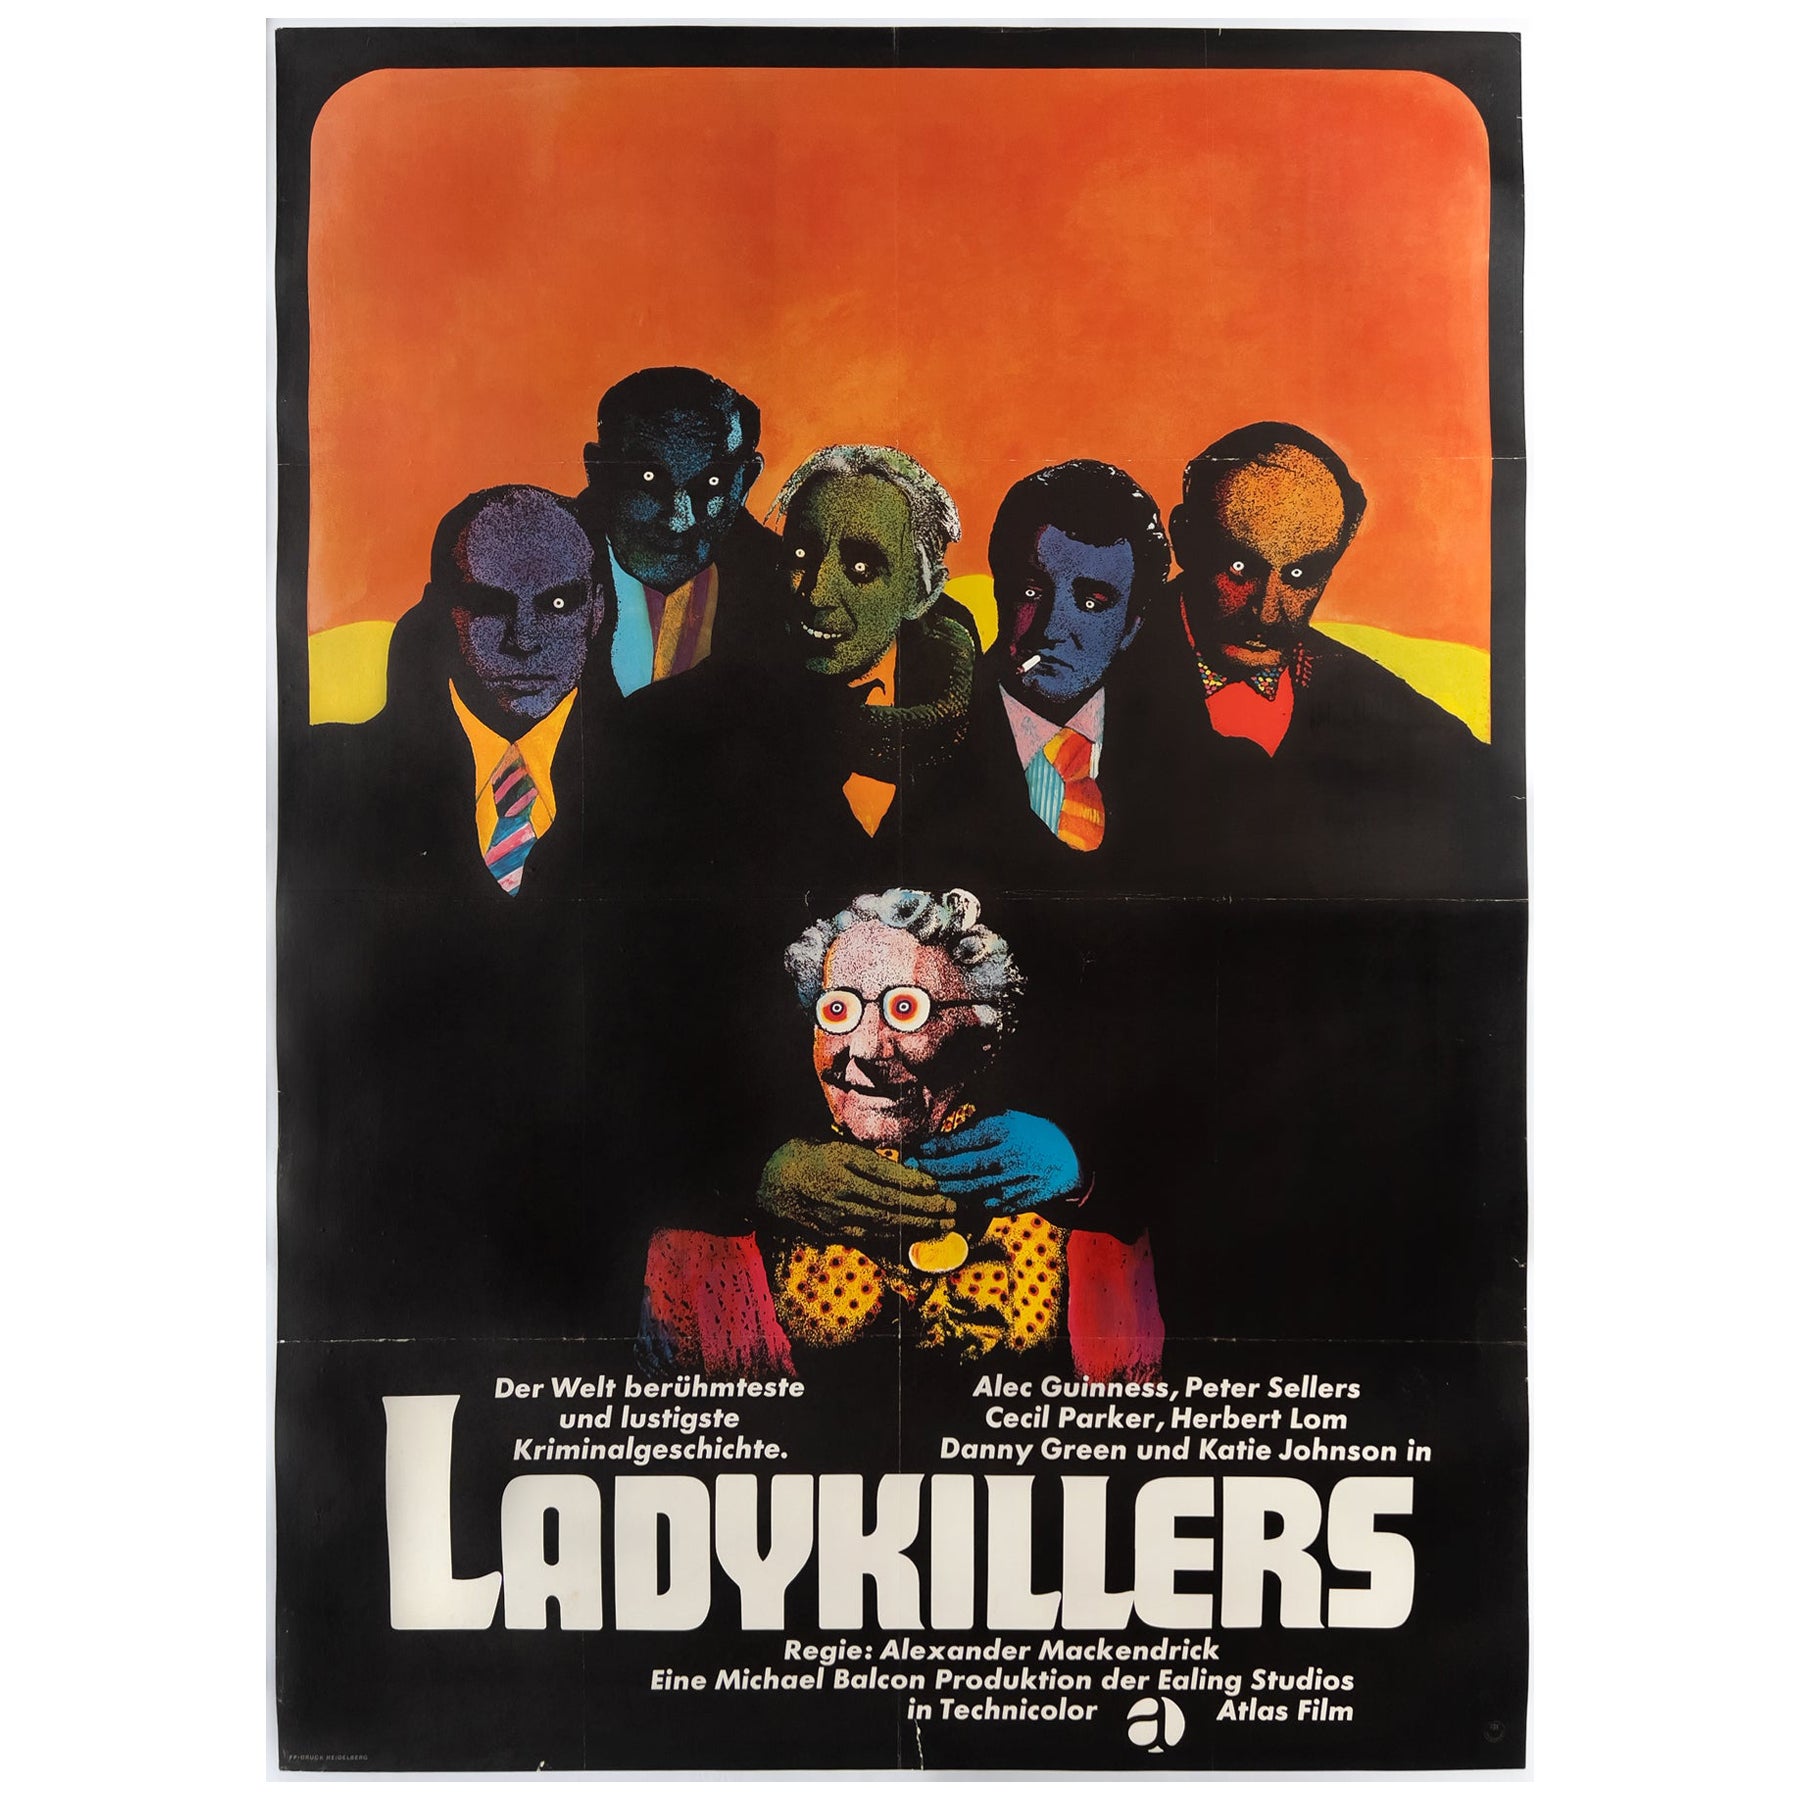 Affiche allemande du film LadyKillers R1960s A0 (The LadyKillers), Heinz Edelmann